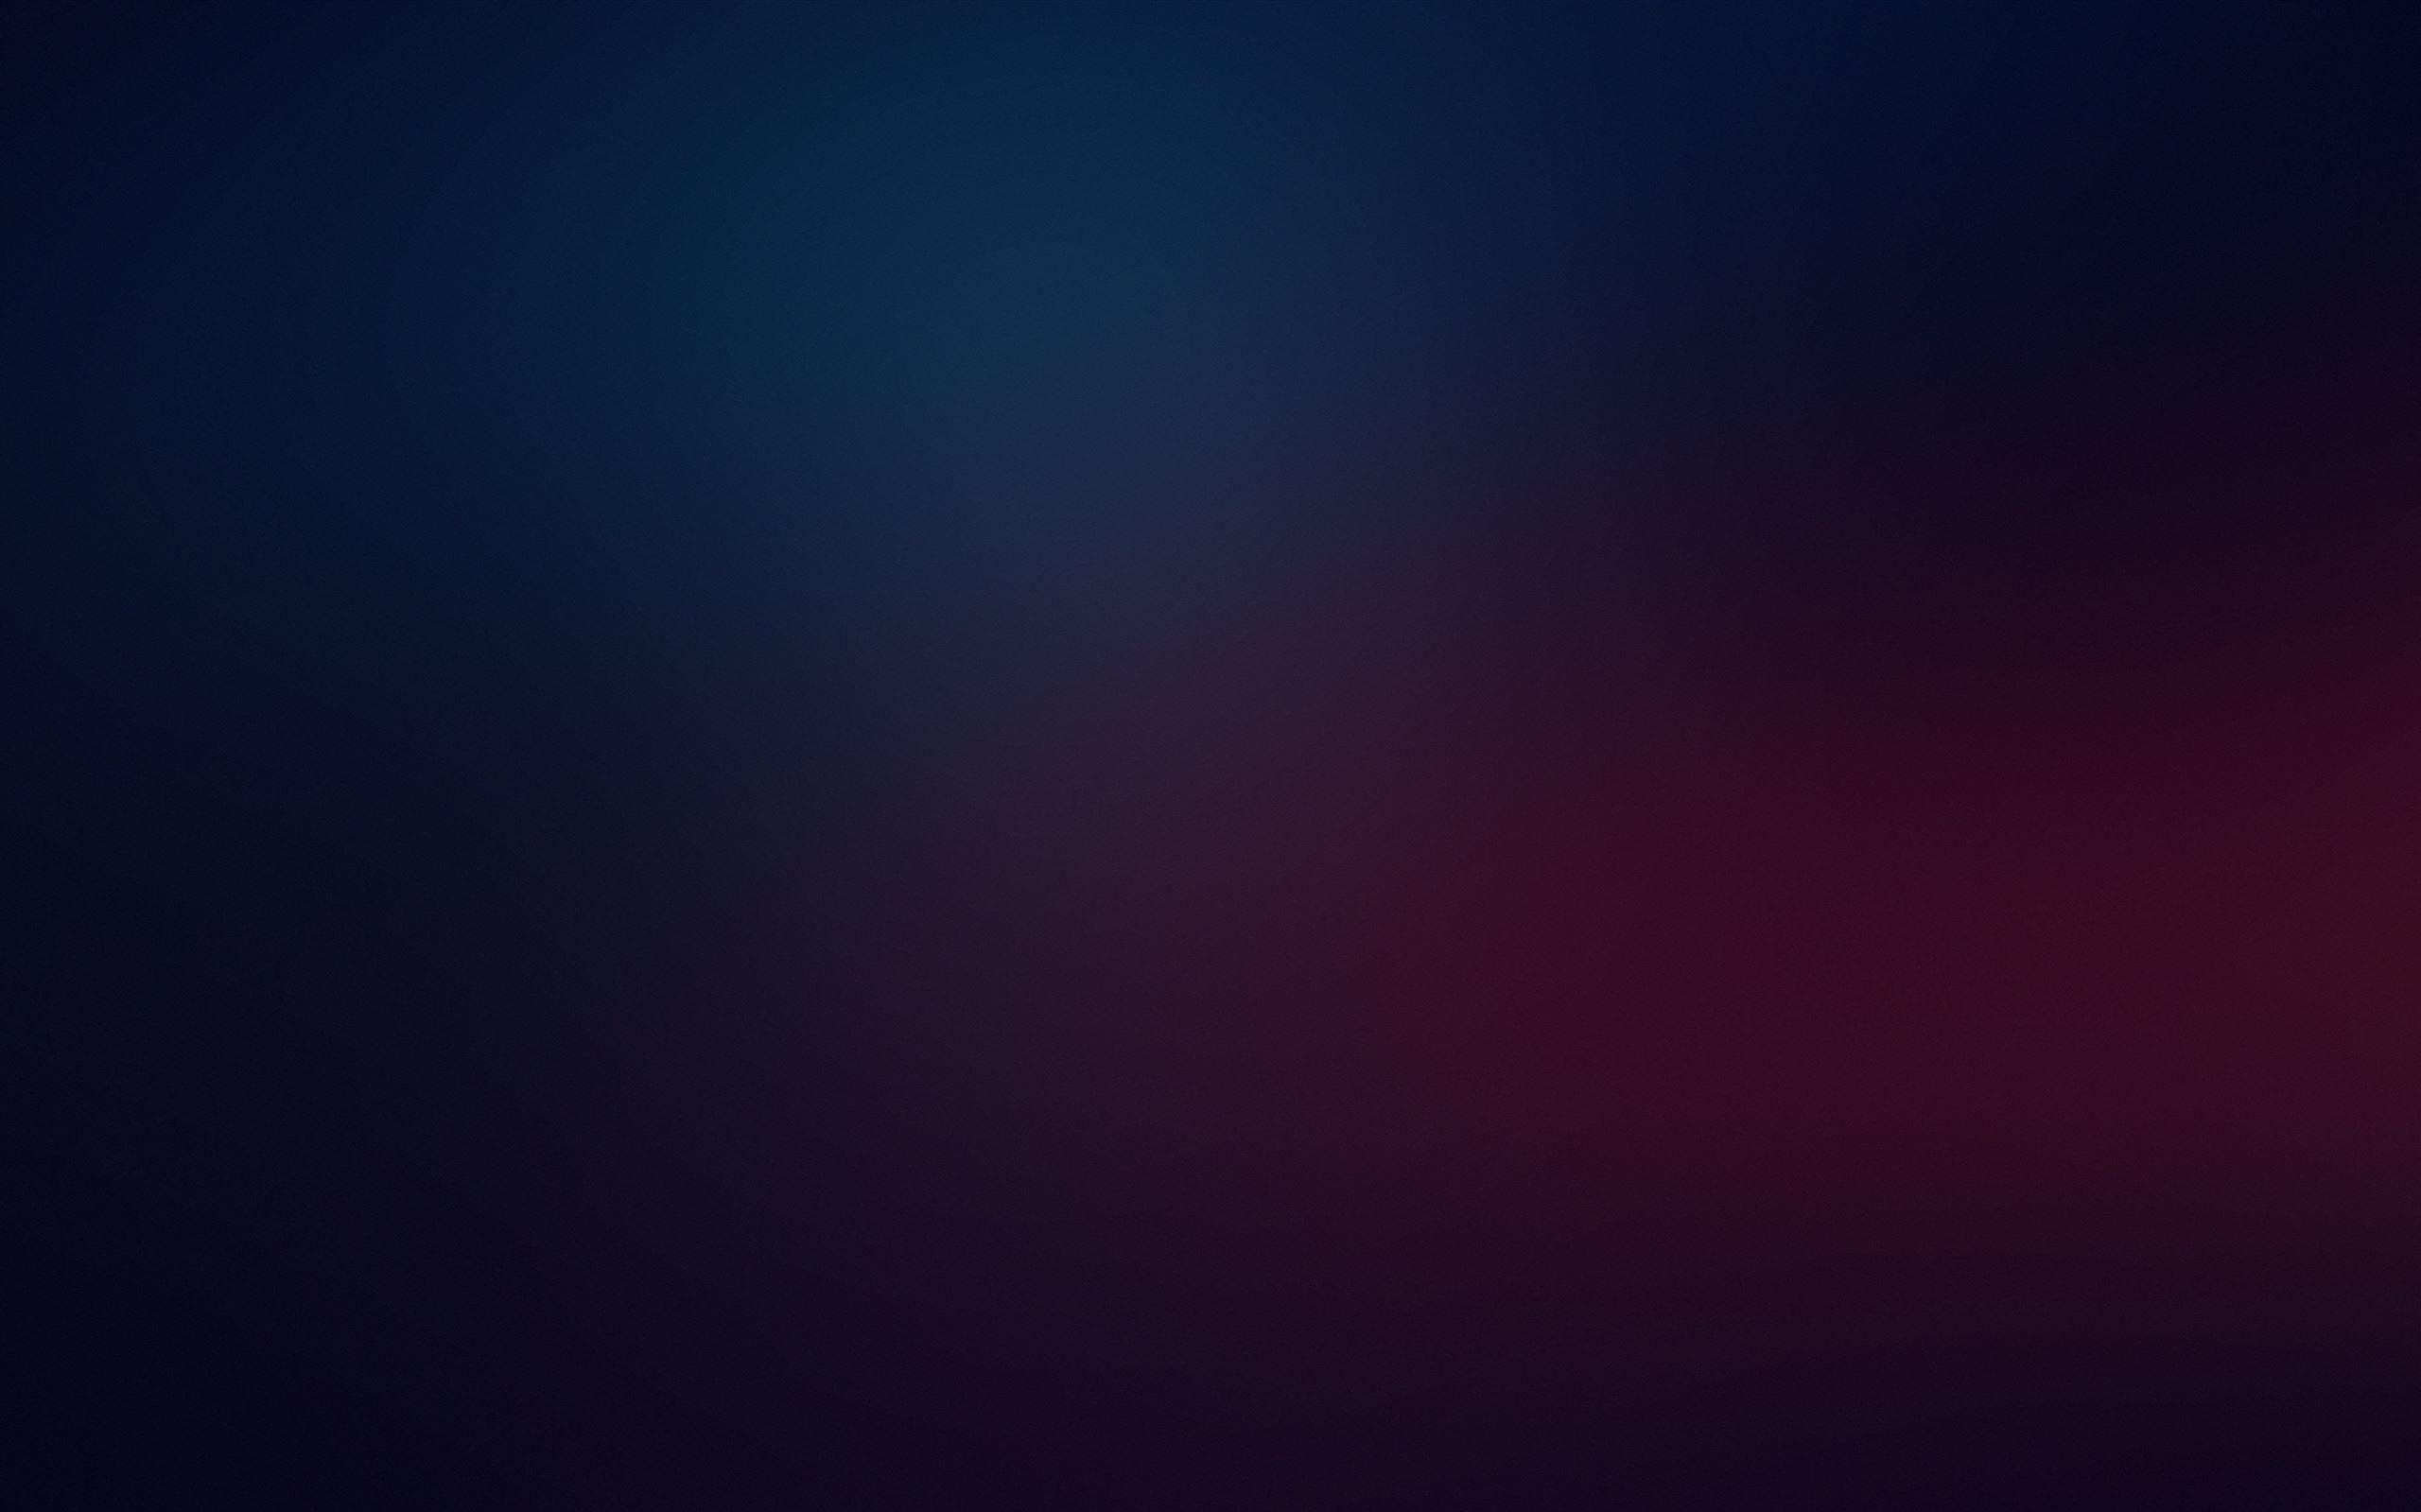 Dark Blur Abstract 4k Mac Wallpaper Allmacwallpaper